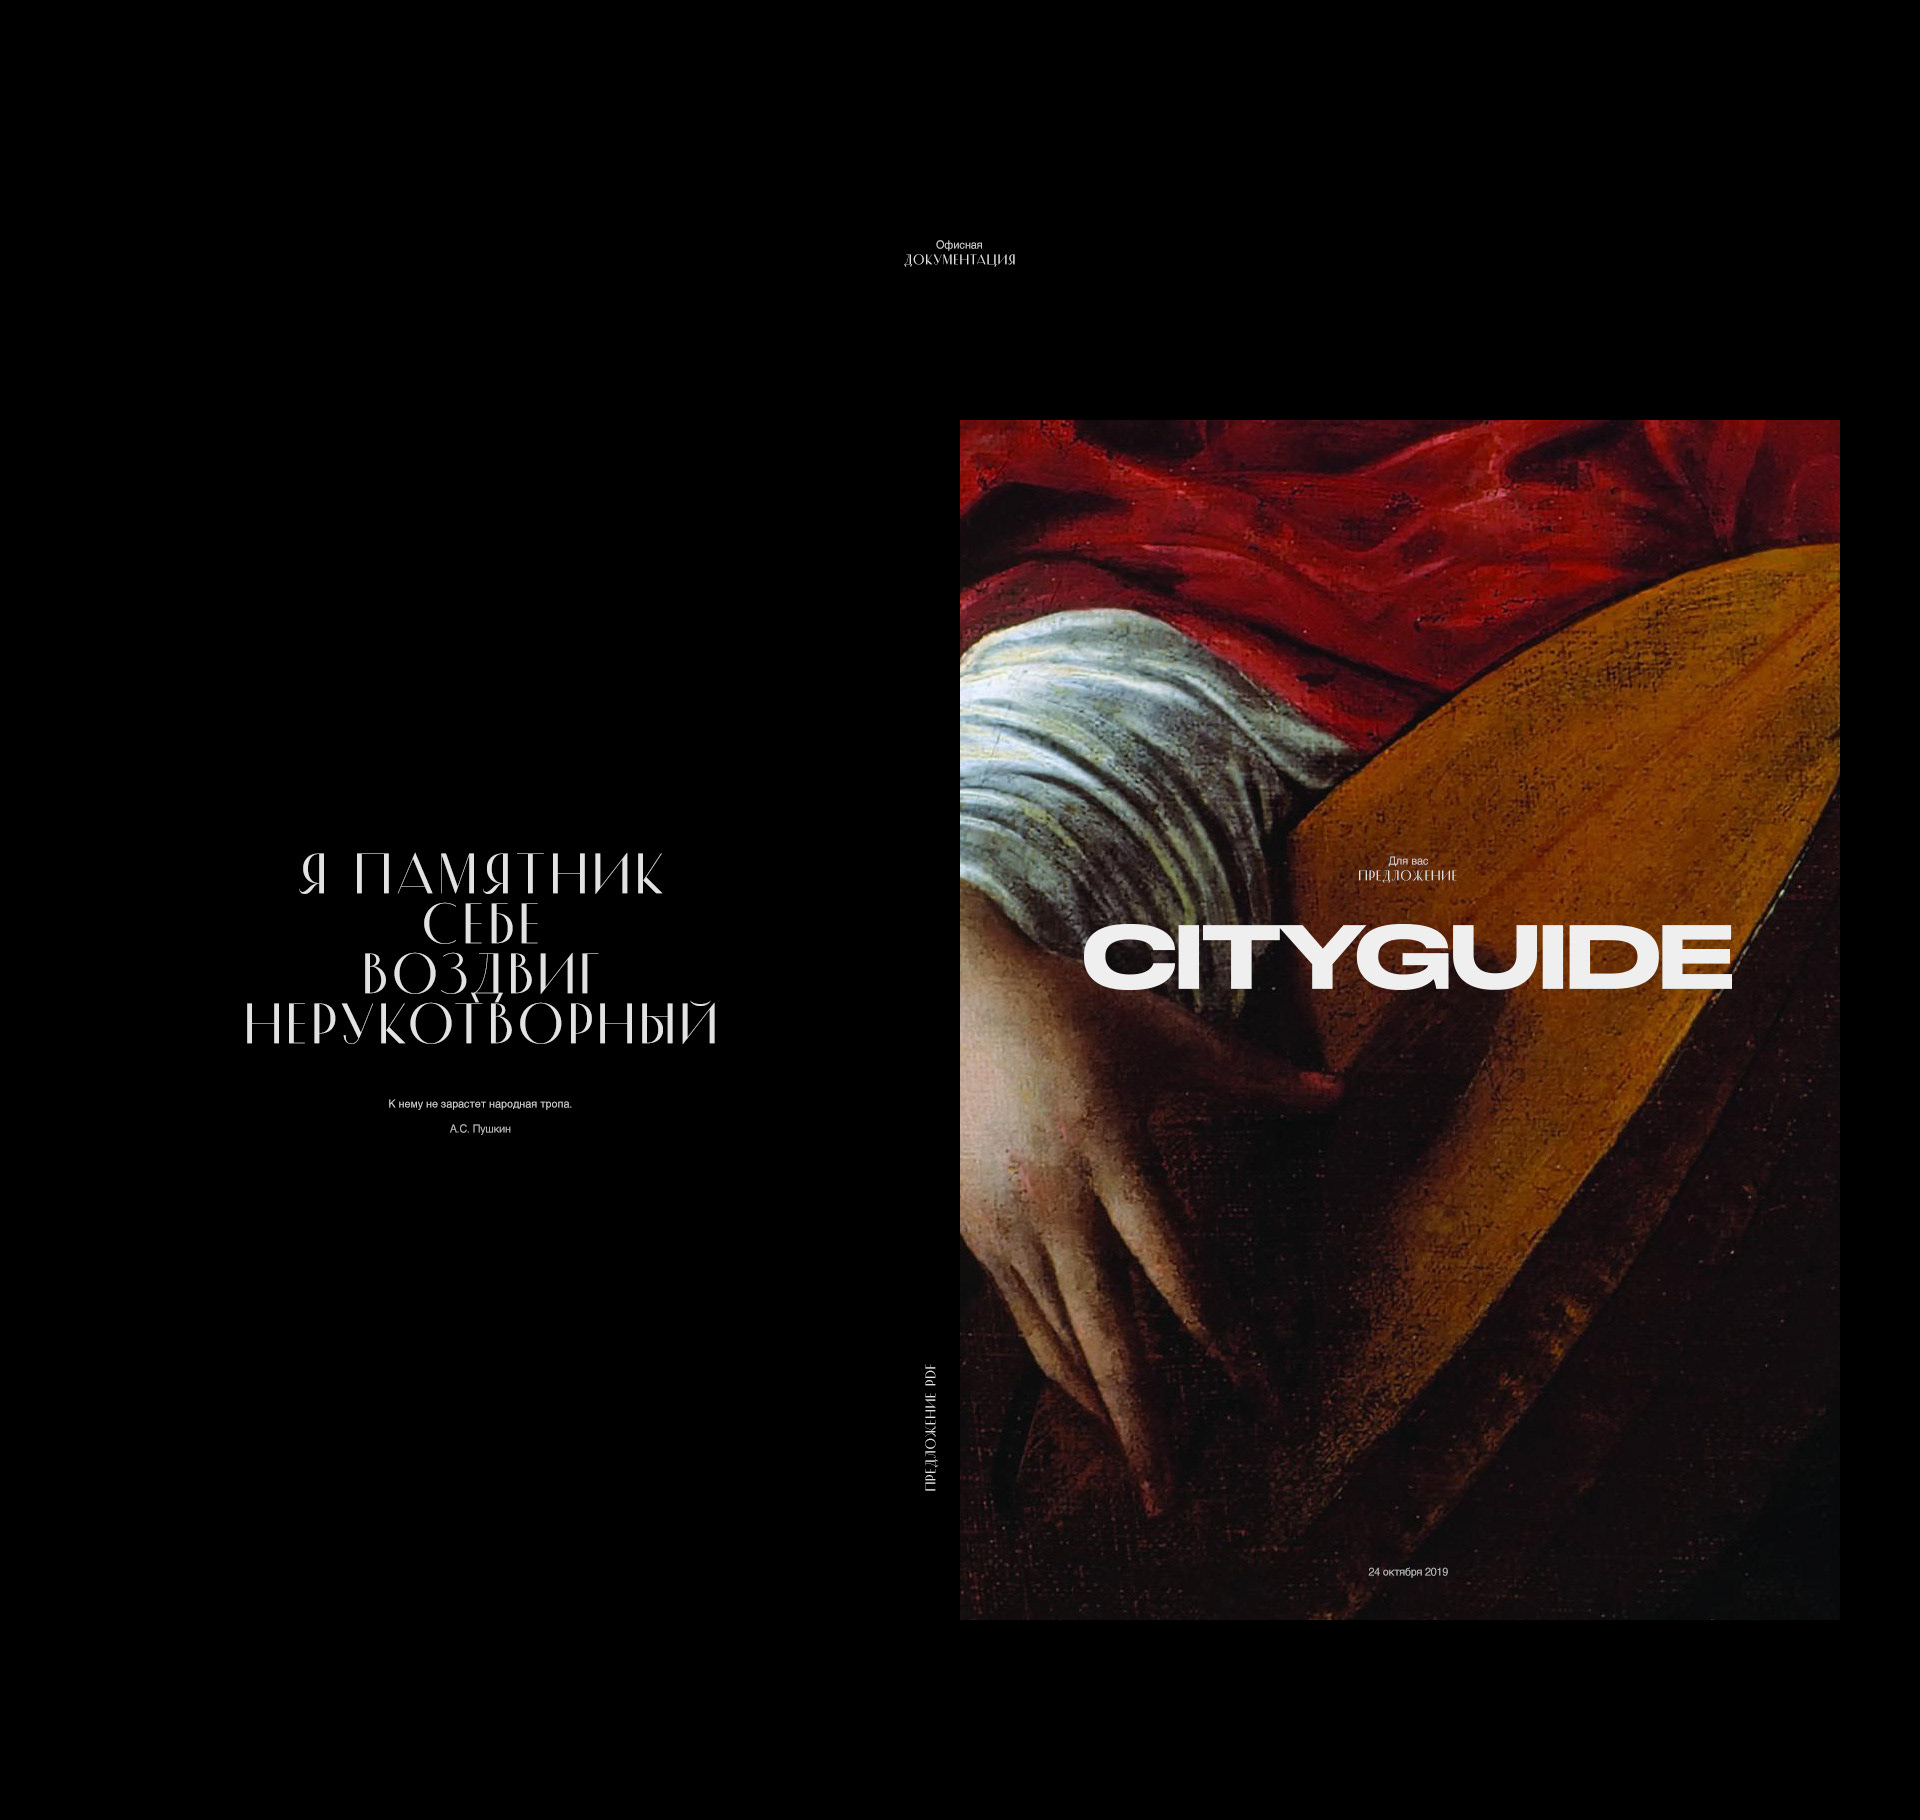 CityGuide — Изображение №26 — Интерфейсы, Анимация на Dprofile